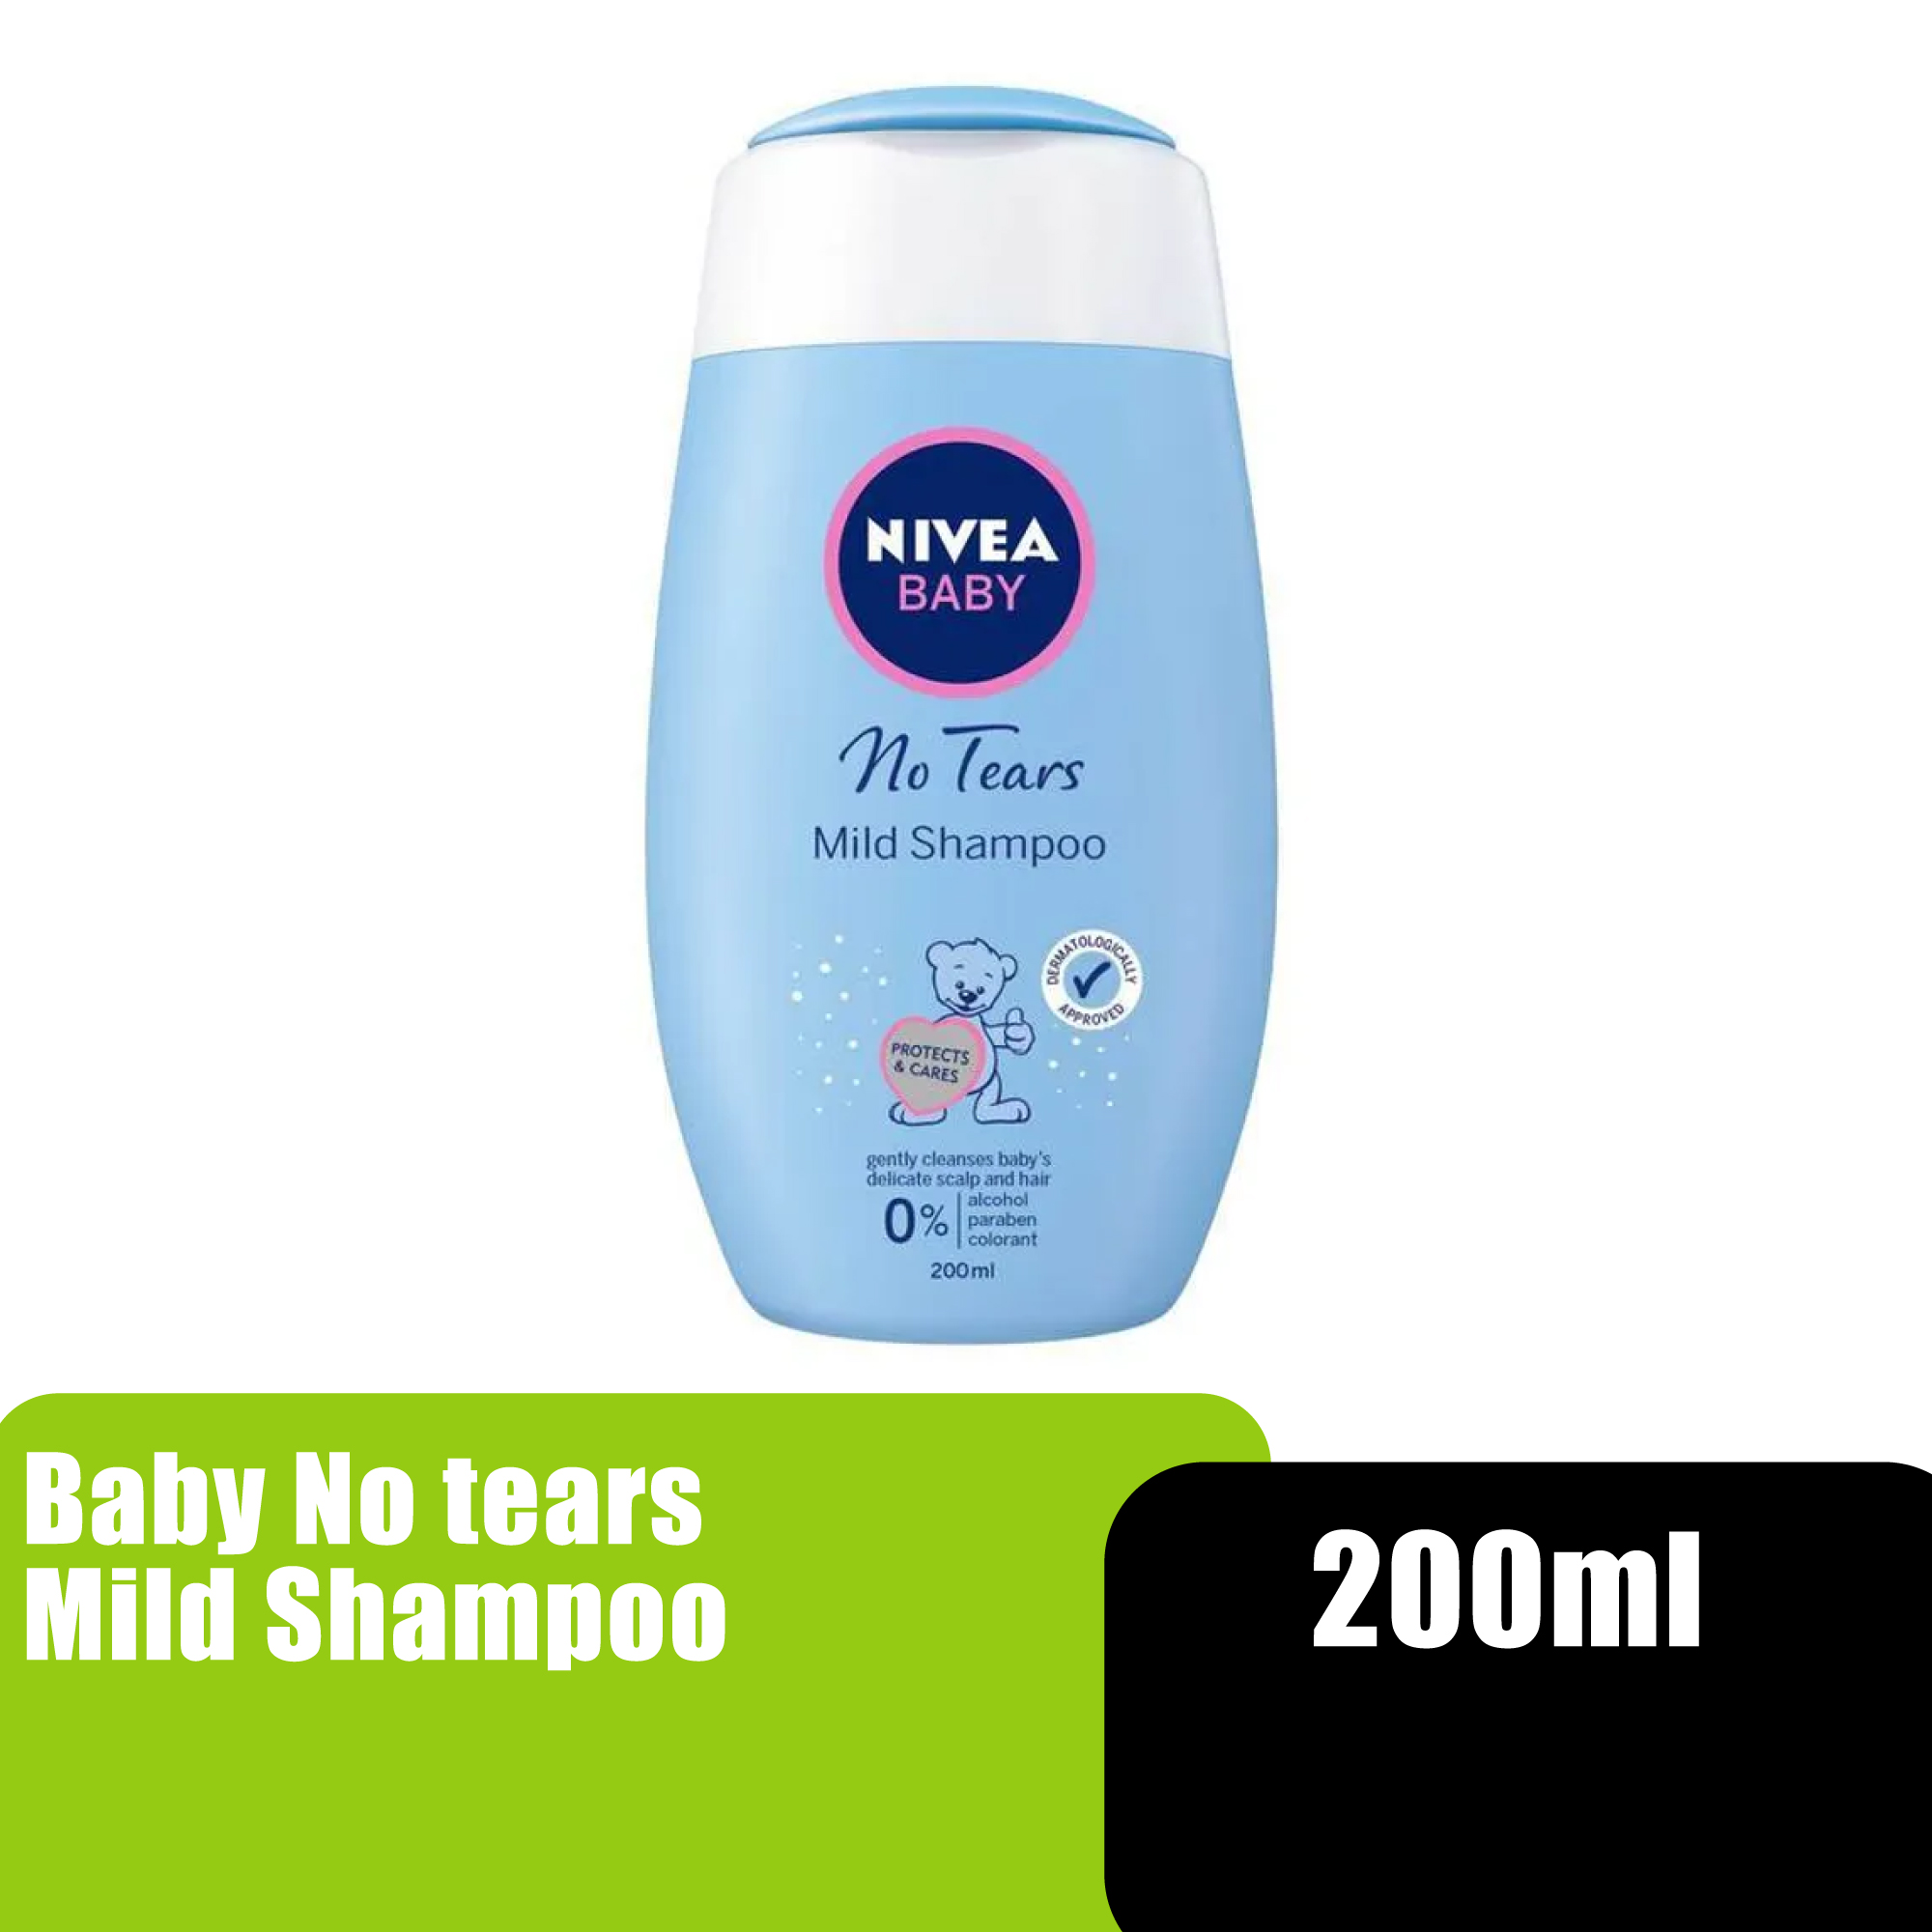 NIVEA BABY NO TEARS MILD SHAMPOO 200ML (86150)